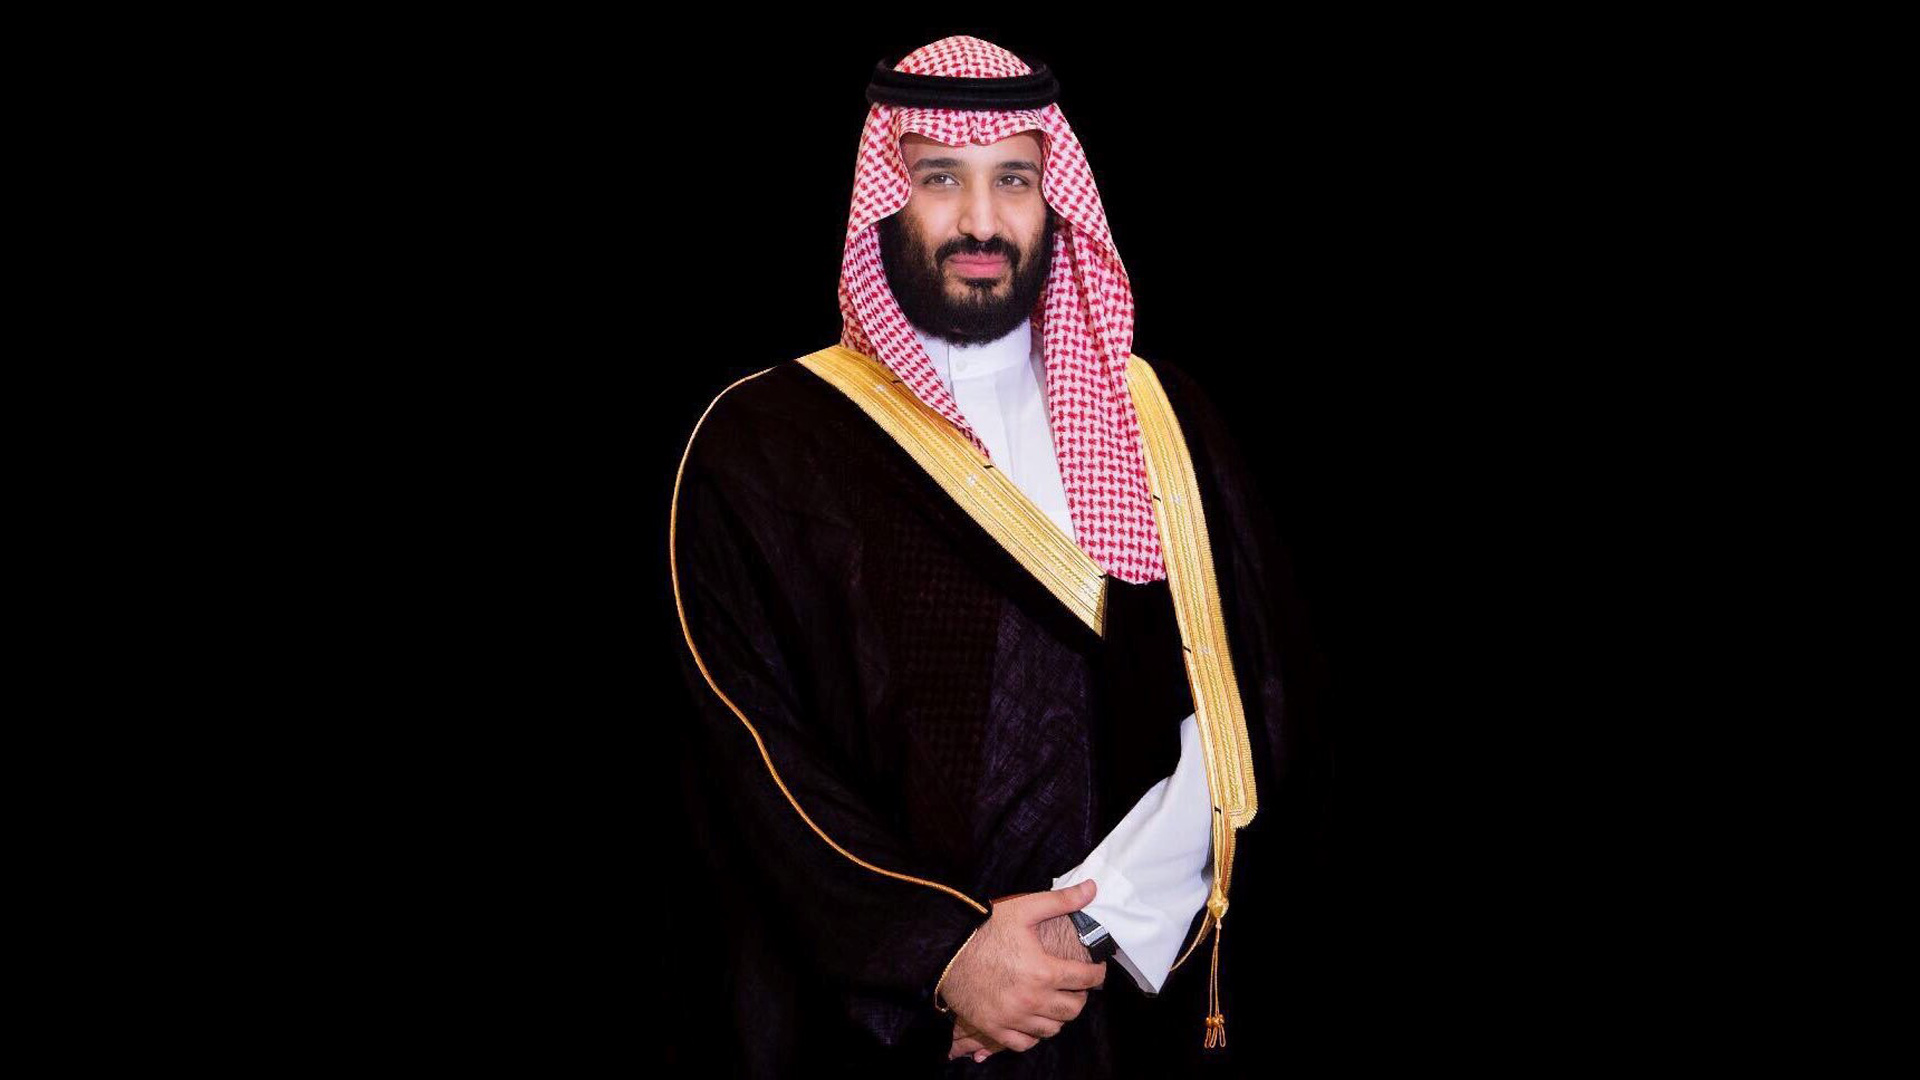 محمد بن سلمان Mohammed bin Salman يطلق مخطط وسط جدة باستثمارات 75 مليار ريال